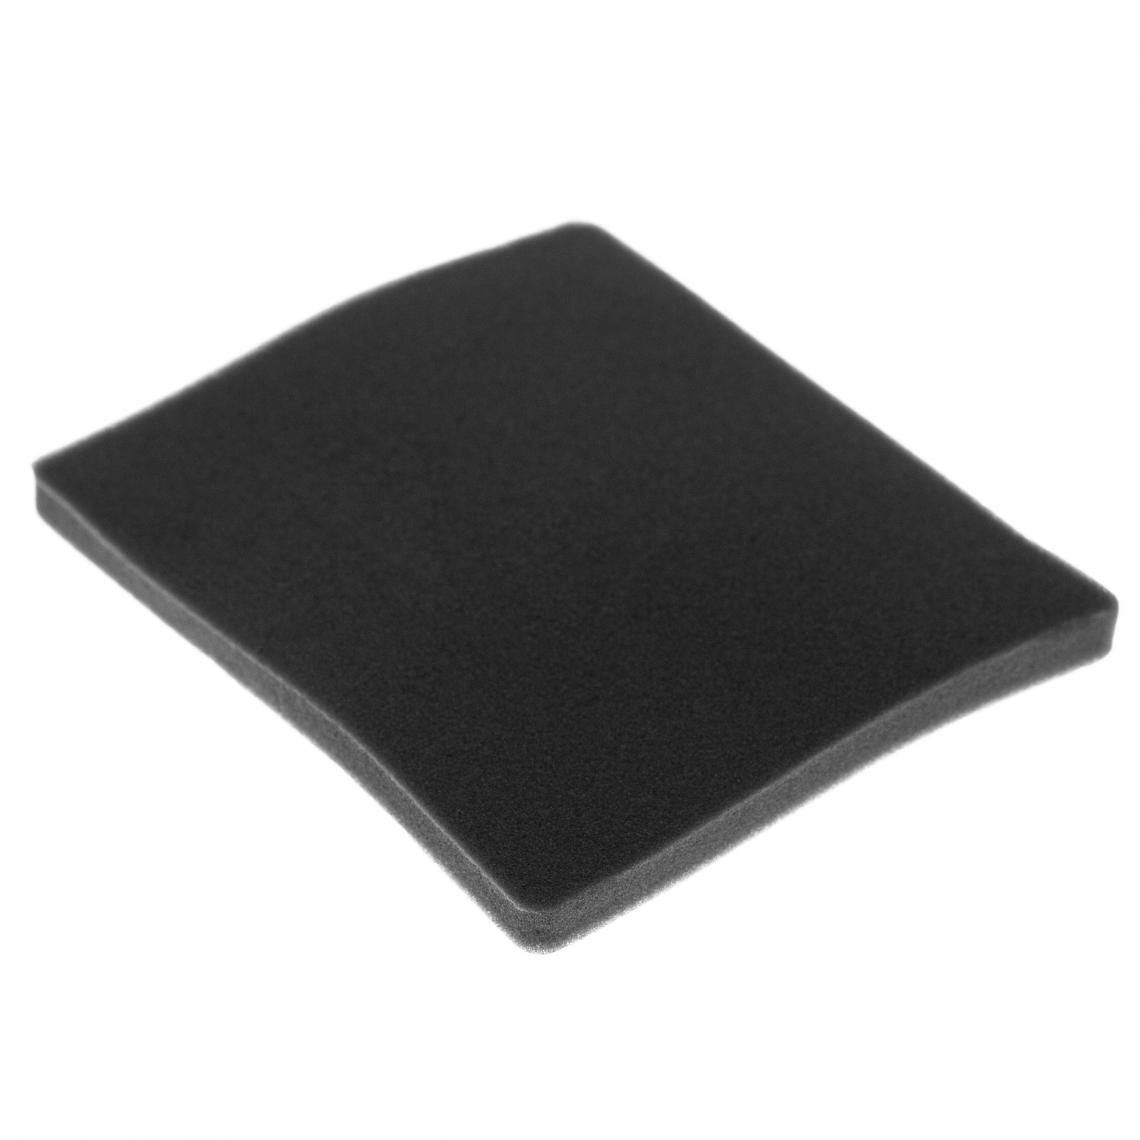 Vhbw - vhbw Filtre compatible avec Electrolux ZAC6725 (910288307) aspirateur - filtre de sortie d'air (filtre éponge), noir - Accessoire entretien des sols